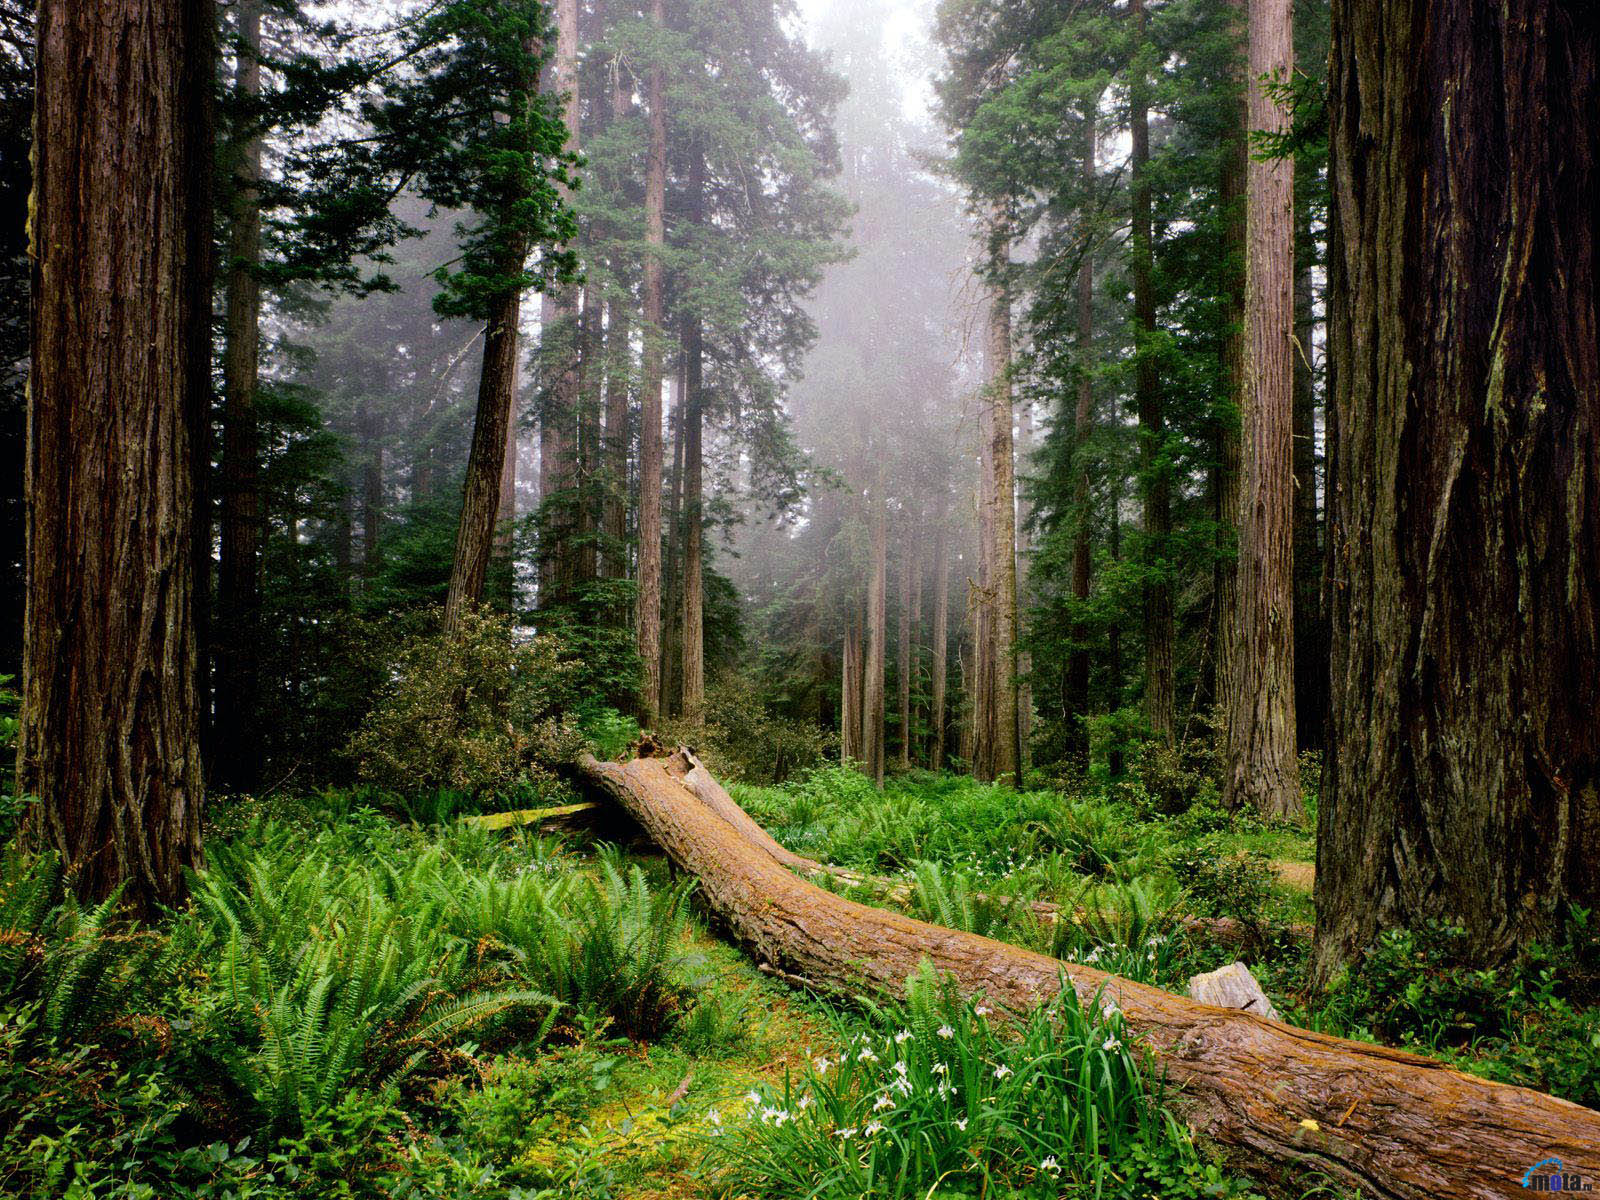 Gobiernos no son conscientes del valor de sus bosques. Chile no es la excepción